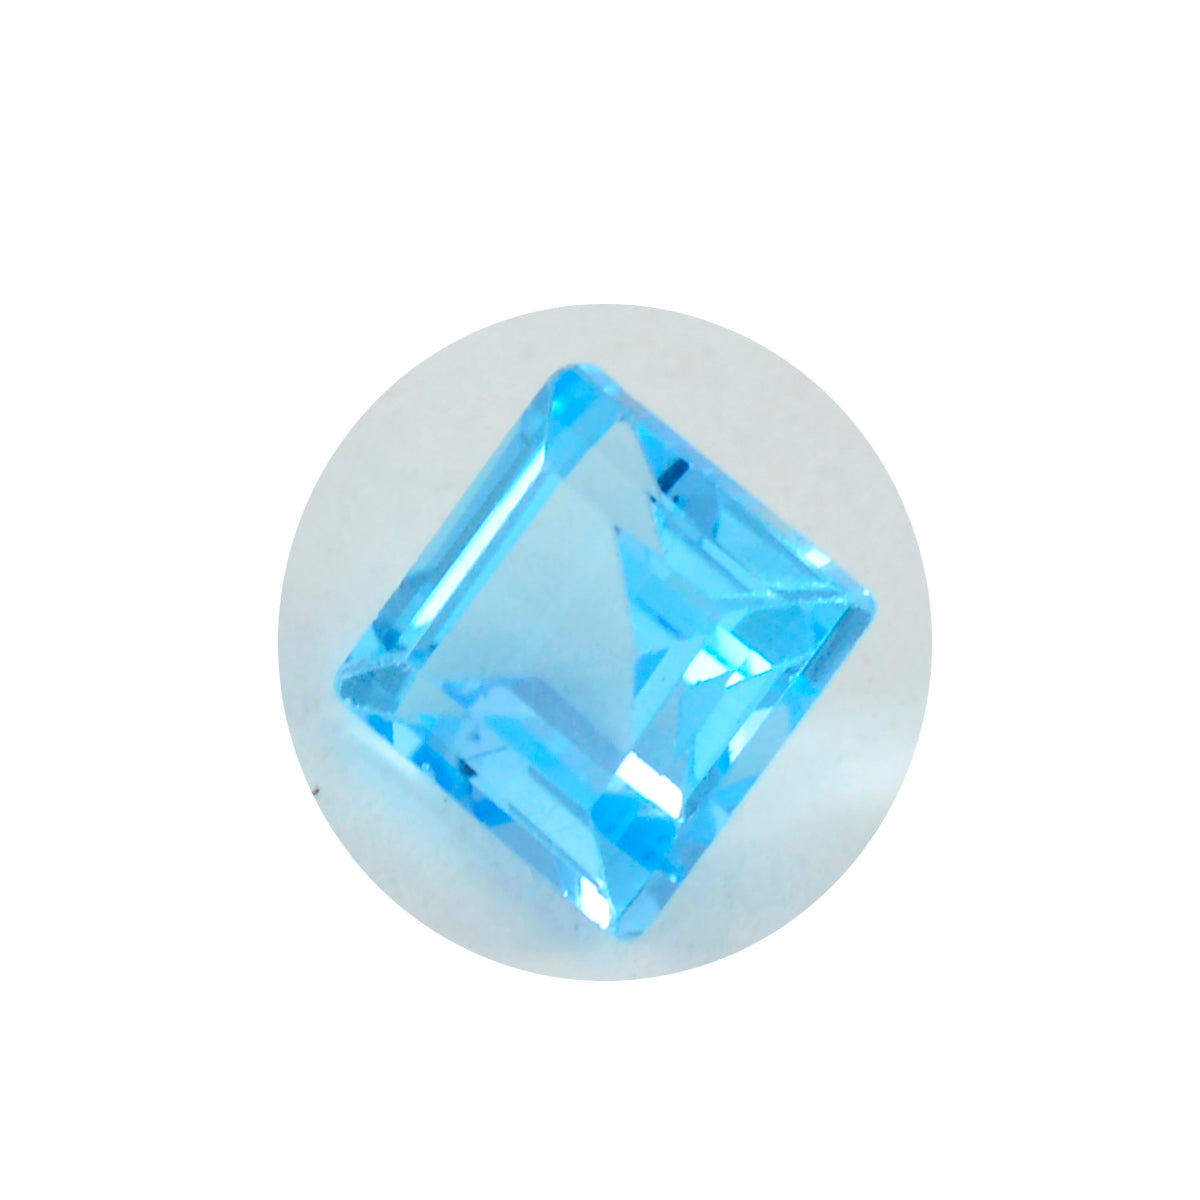 Riyogems 1 pièce topaze bleue naturelle à facettes 11x11mm forme carrée belle qualité pierre précieuse en vrac